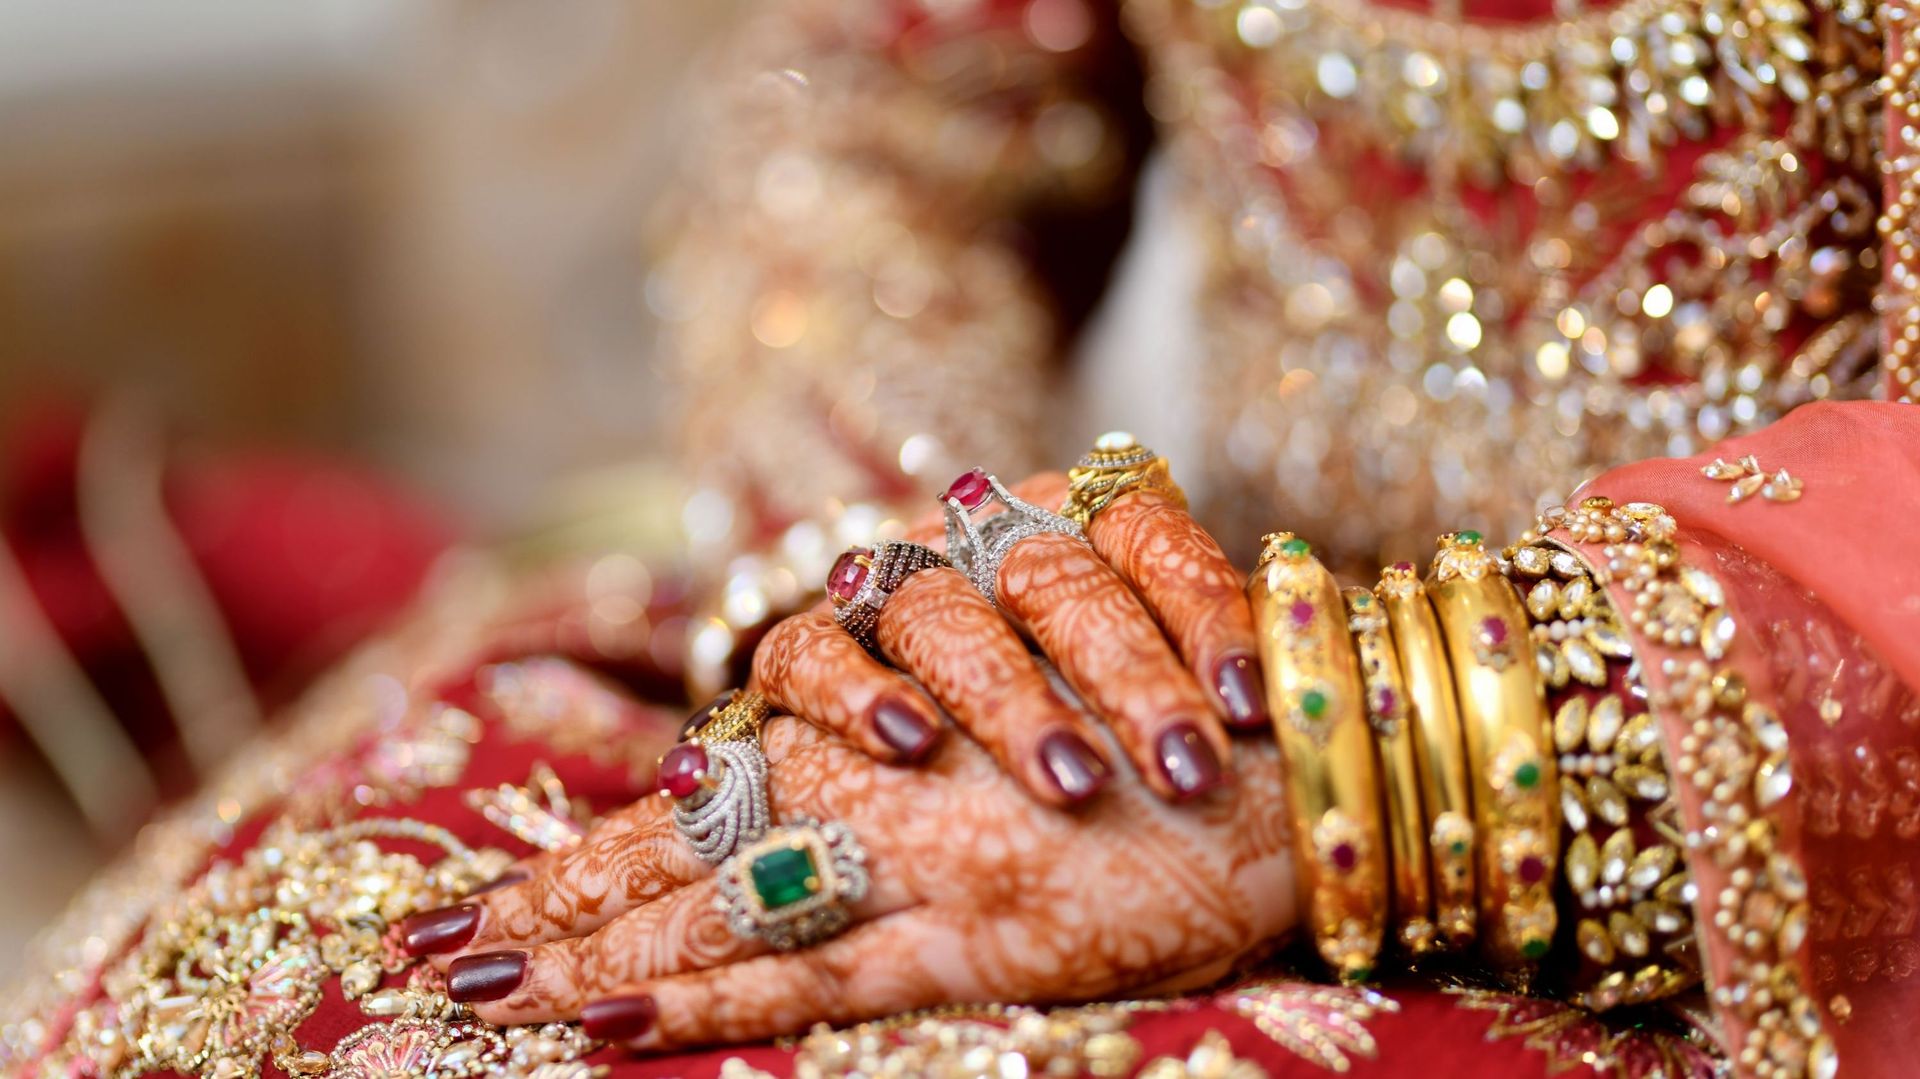 Les mariages forcés au Pakistan augmentent, dénoncent des experts de l’ONU